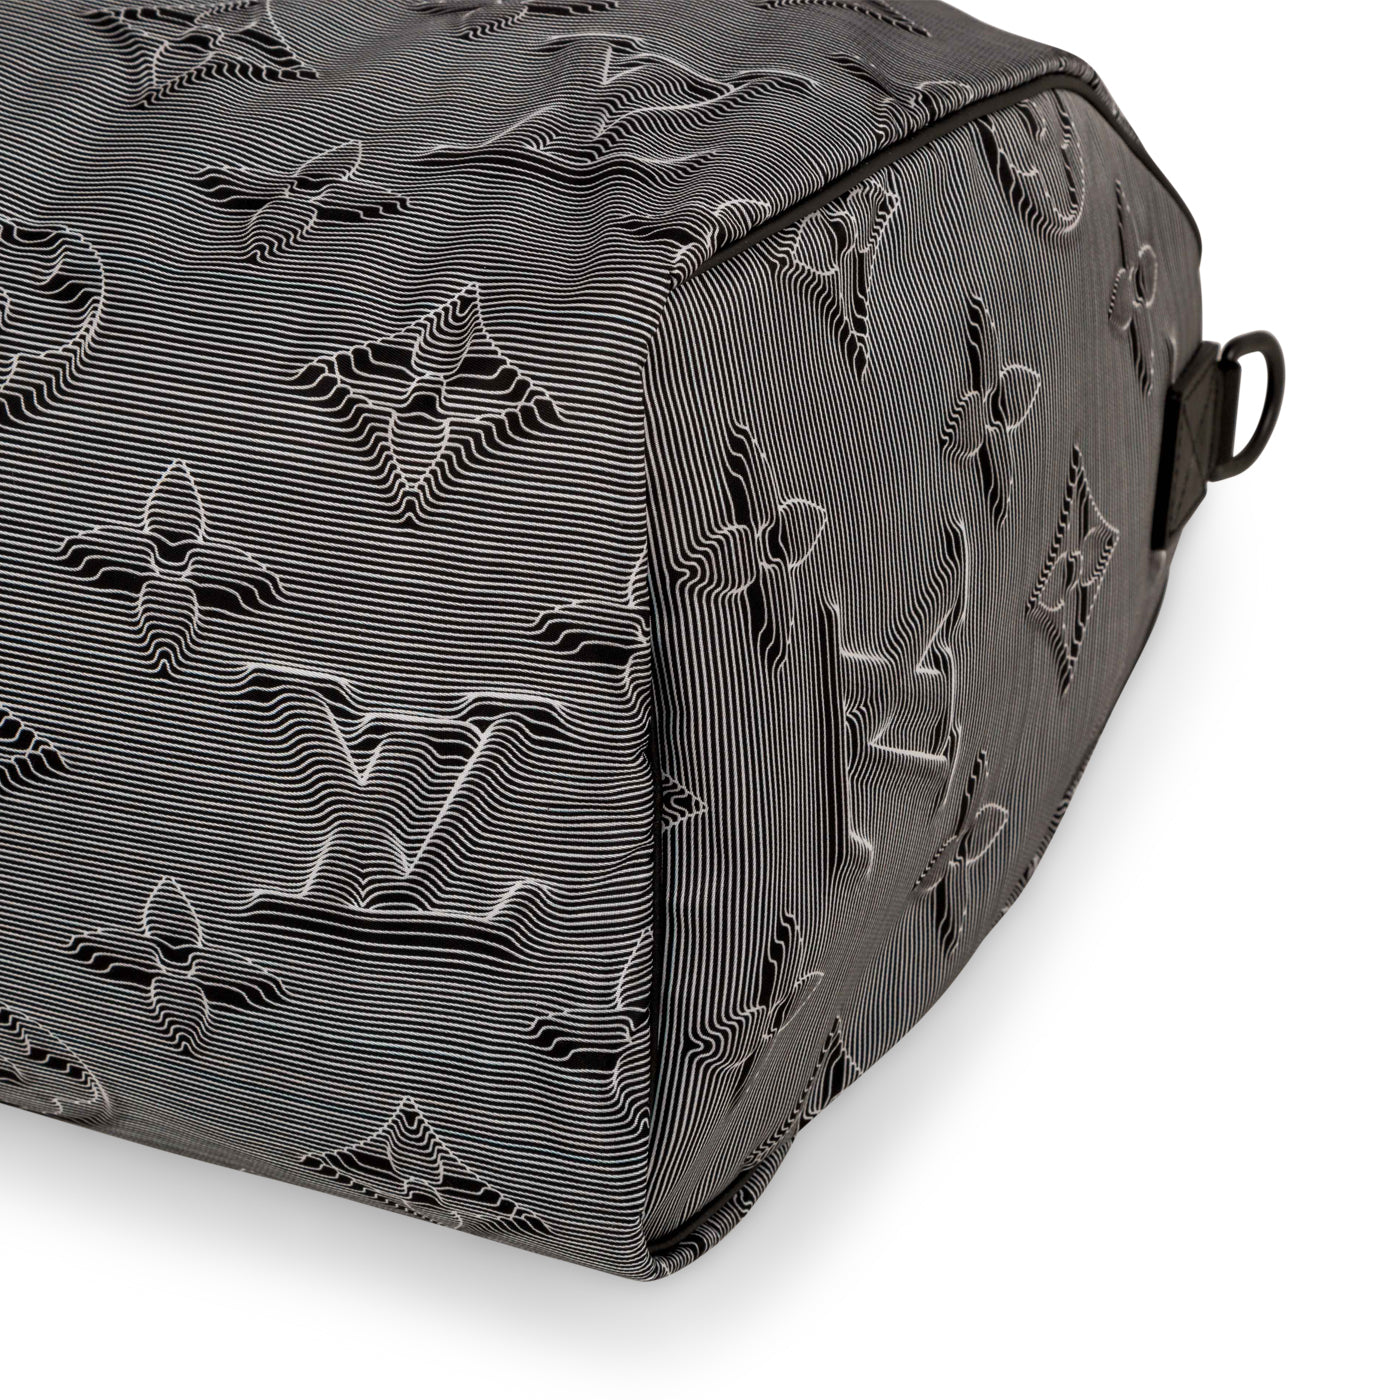 Louis Vuitton Bag LV Virgil Abloh REVERSIBLE KEEPALL BANDOULIÈRE 50 M45602